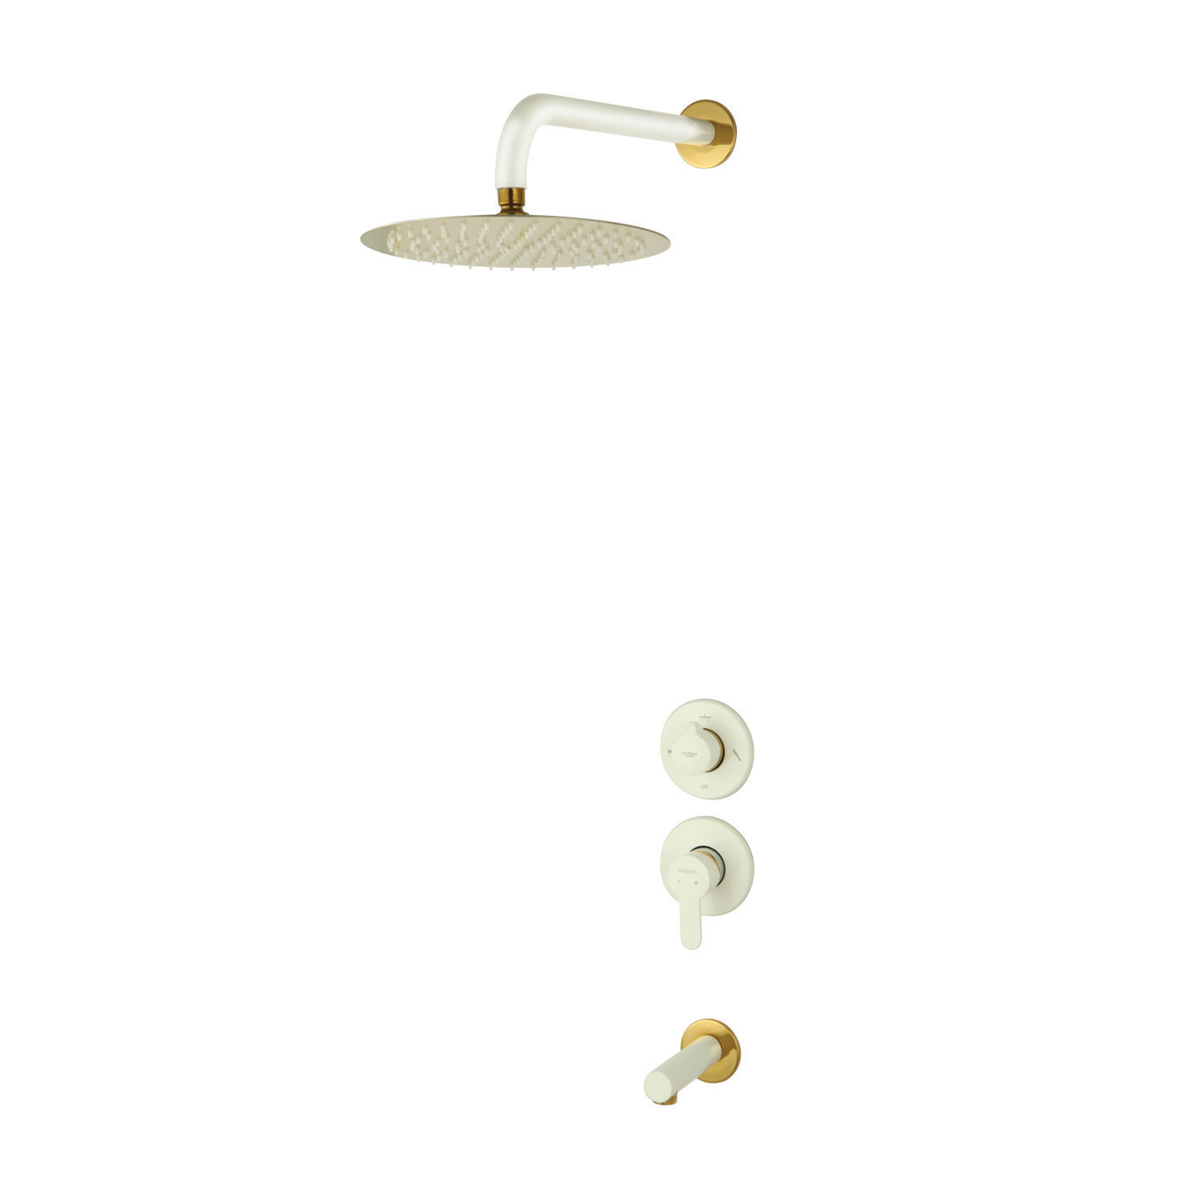 ملحقات شیر حمام و مکانیزم توکار ویوات راسان مدل تنسو کلاس (2) سفید طلایی